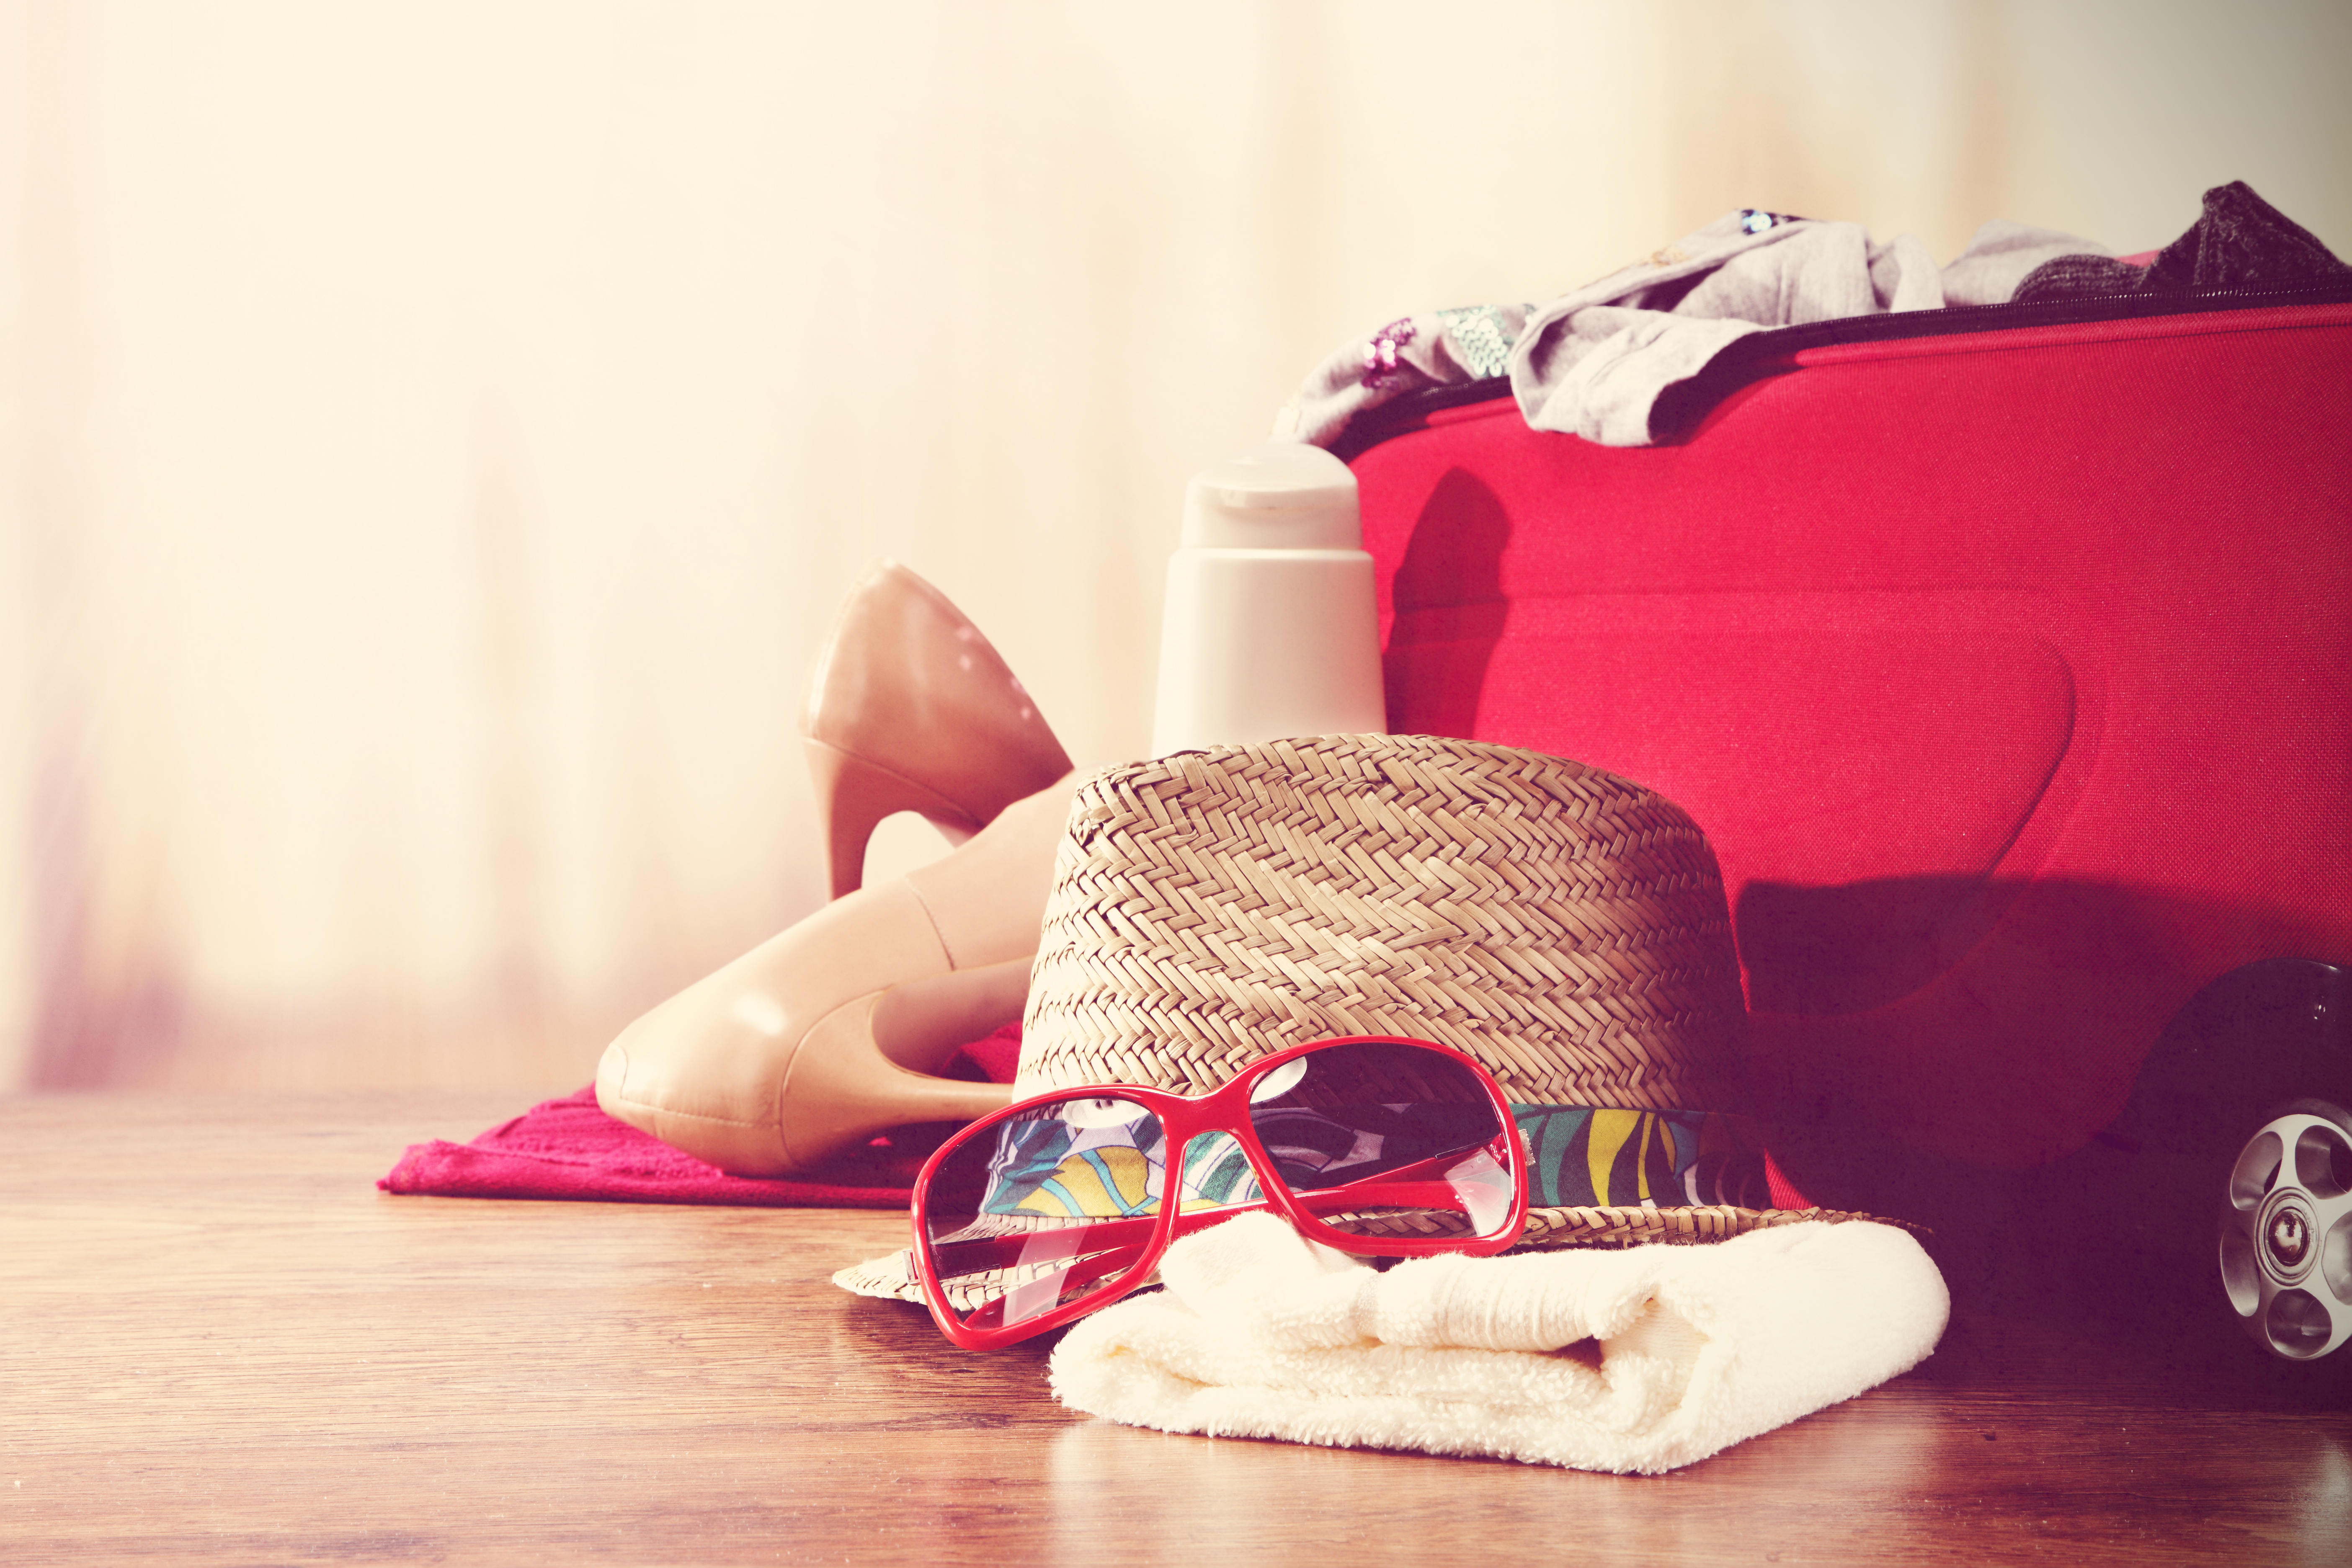 Une valise en train d'être préparée | Source : Shutterstock